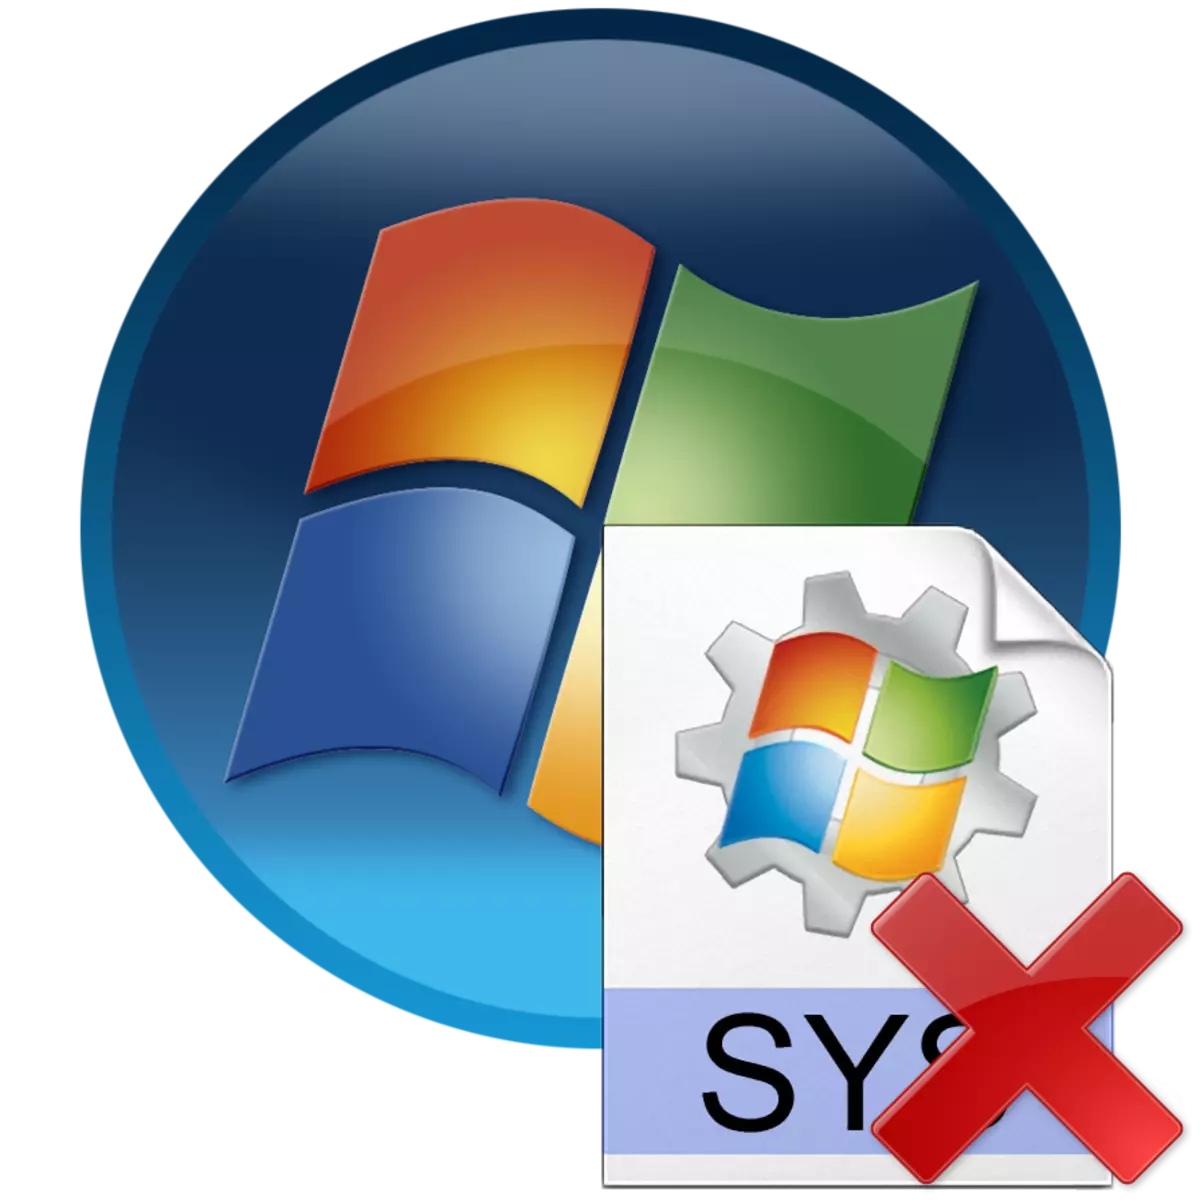 在Windows 7中刪除Hiberfil.sys